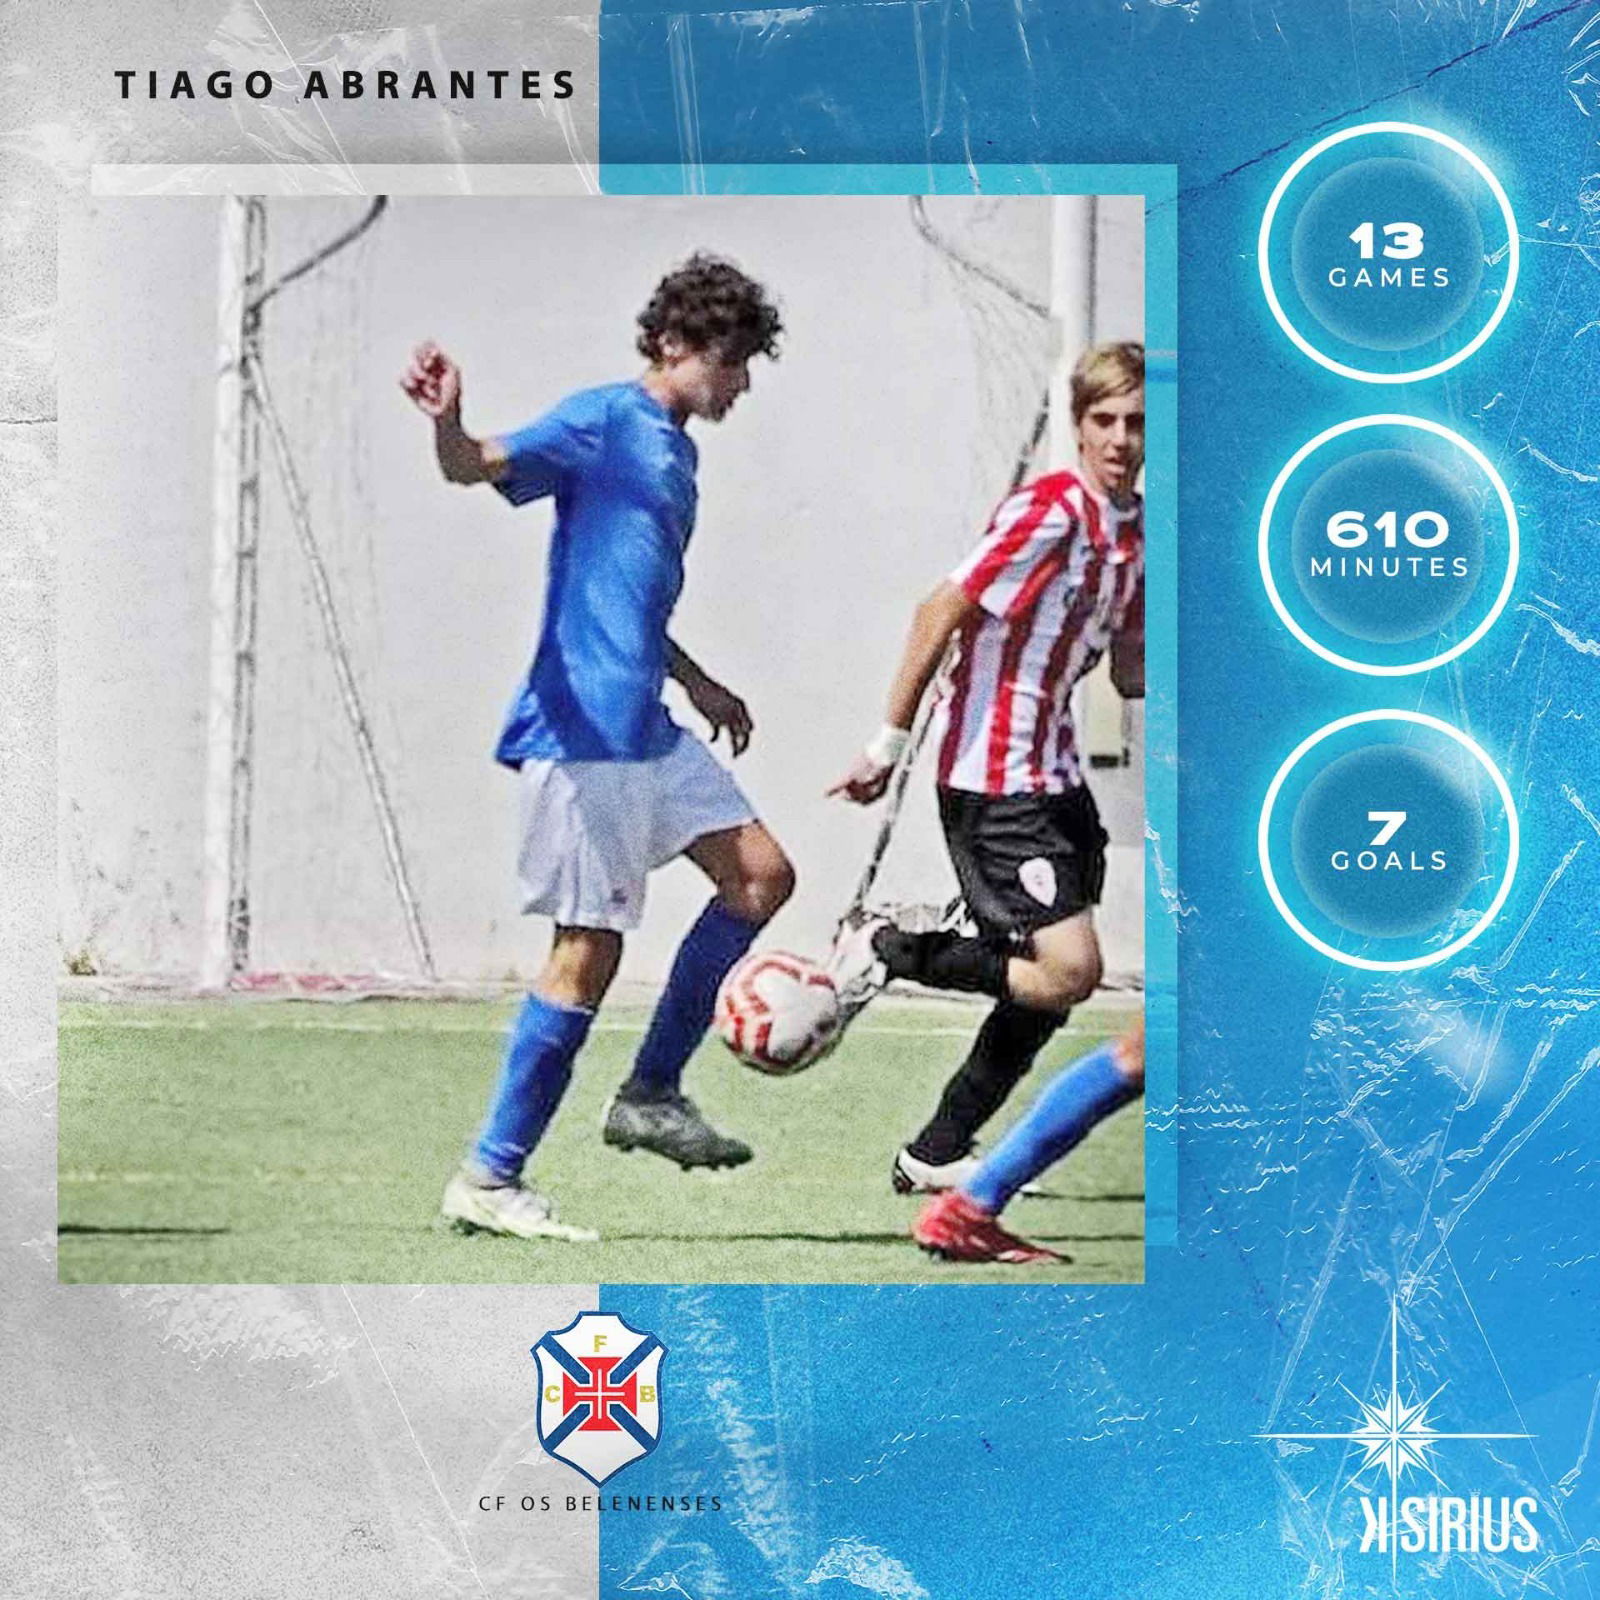 Stats: Tiago Abrantes (CF "Os Belenenses")